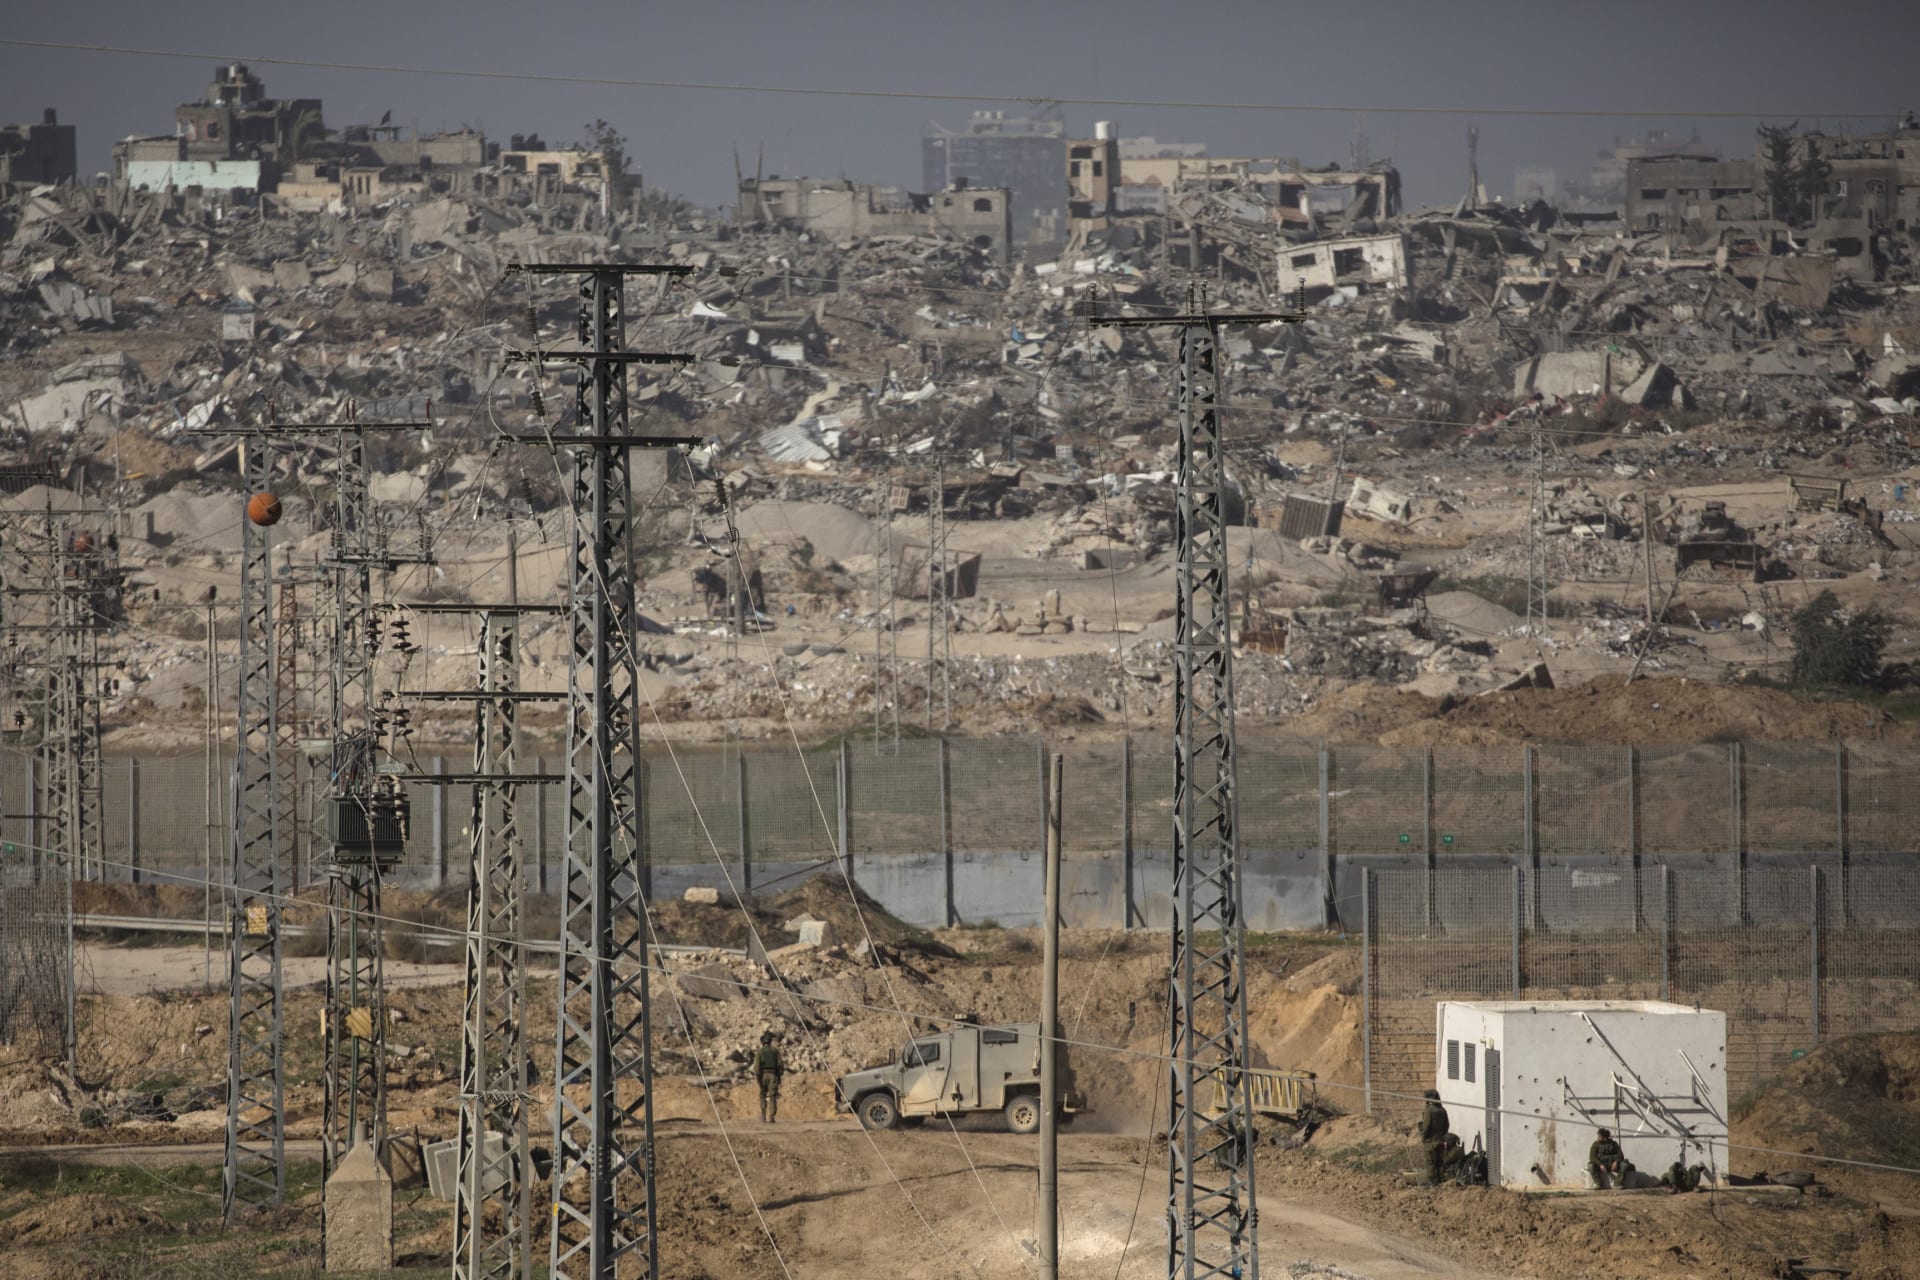 تحليل لـCNN يكشف: إسرائيل قصفت 3 مناطق على الأقل وجهت المدنيين للانتقال إليها في غزة بعد الهدنة 